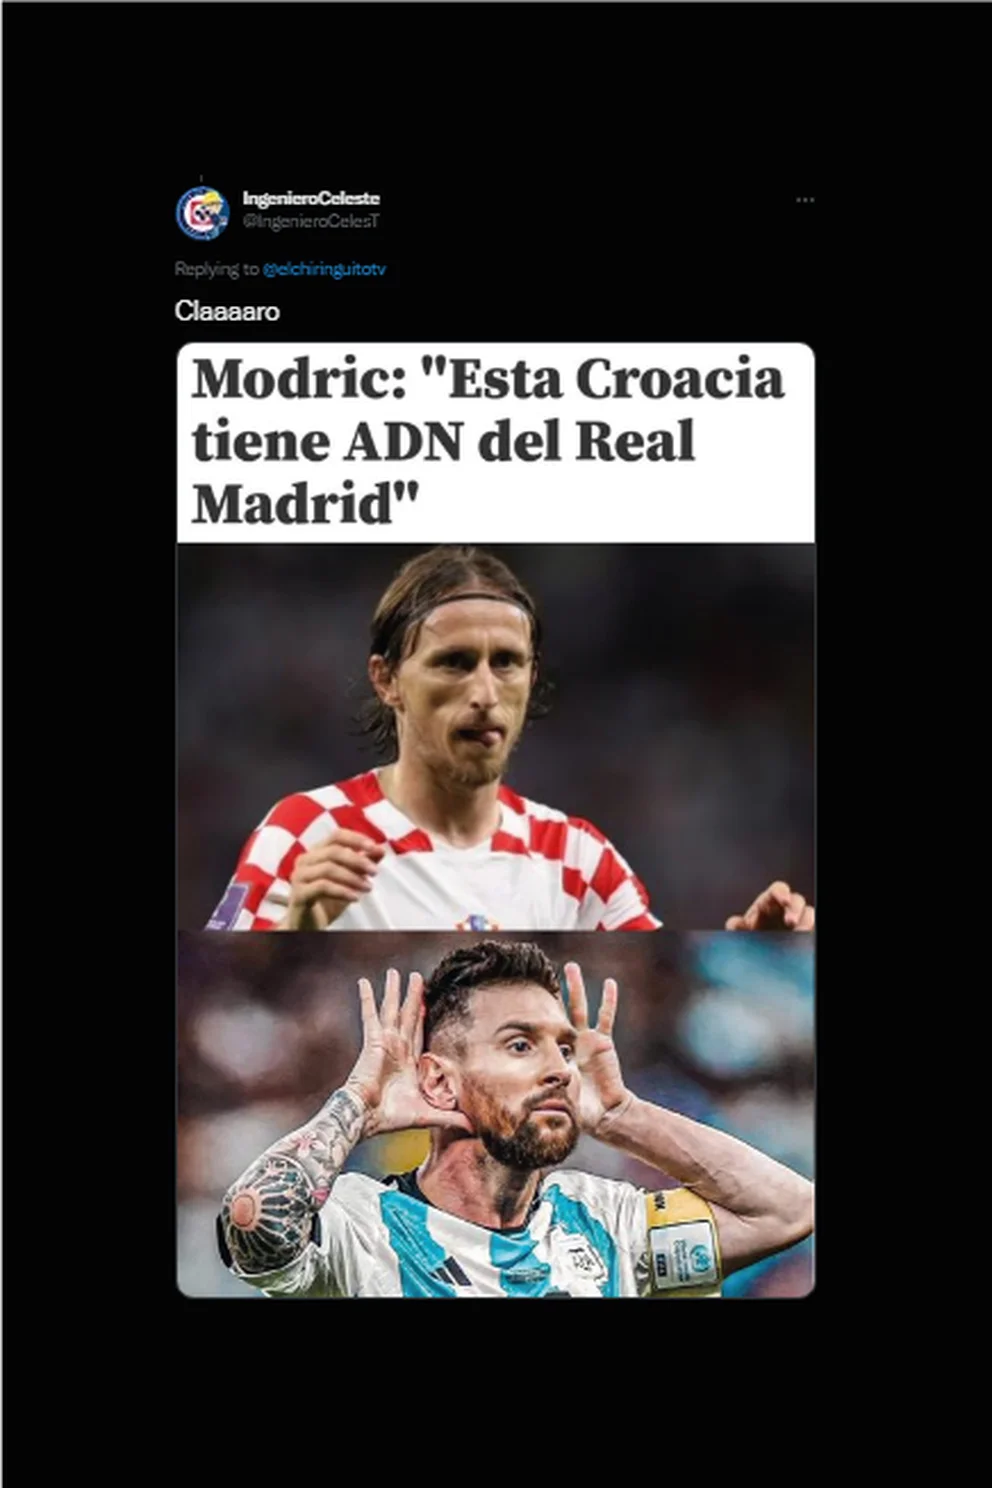 Los mejores memes por la clasificación de Argentina a la final del Mundial Qatar 